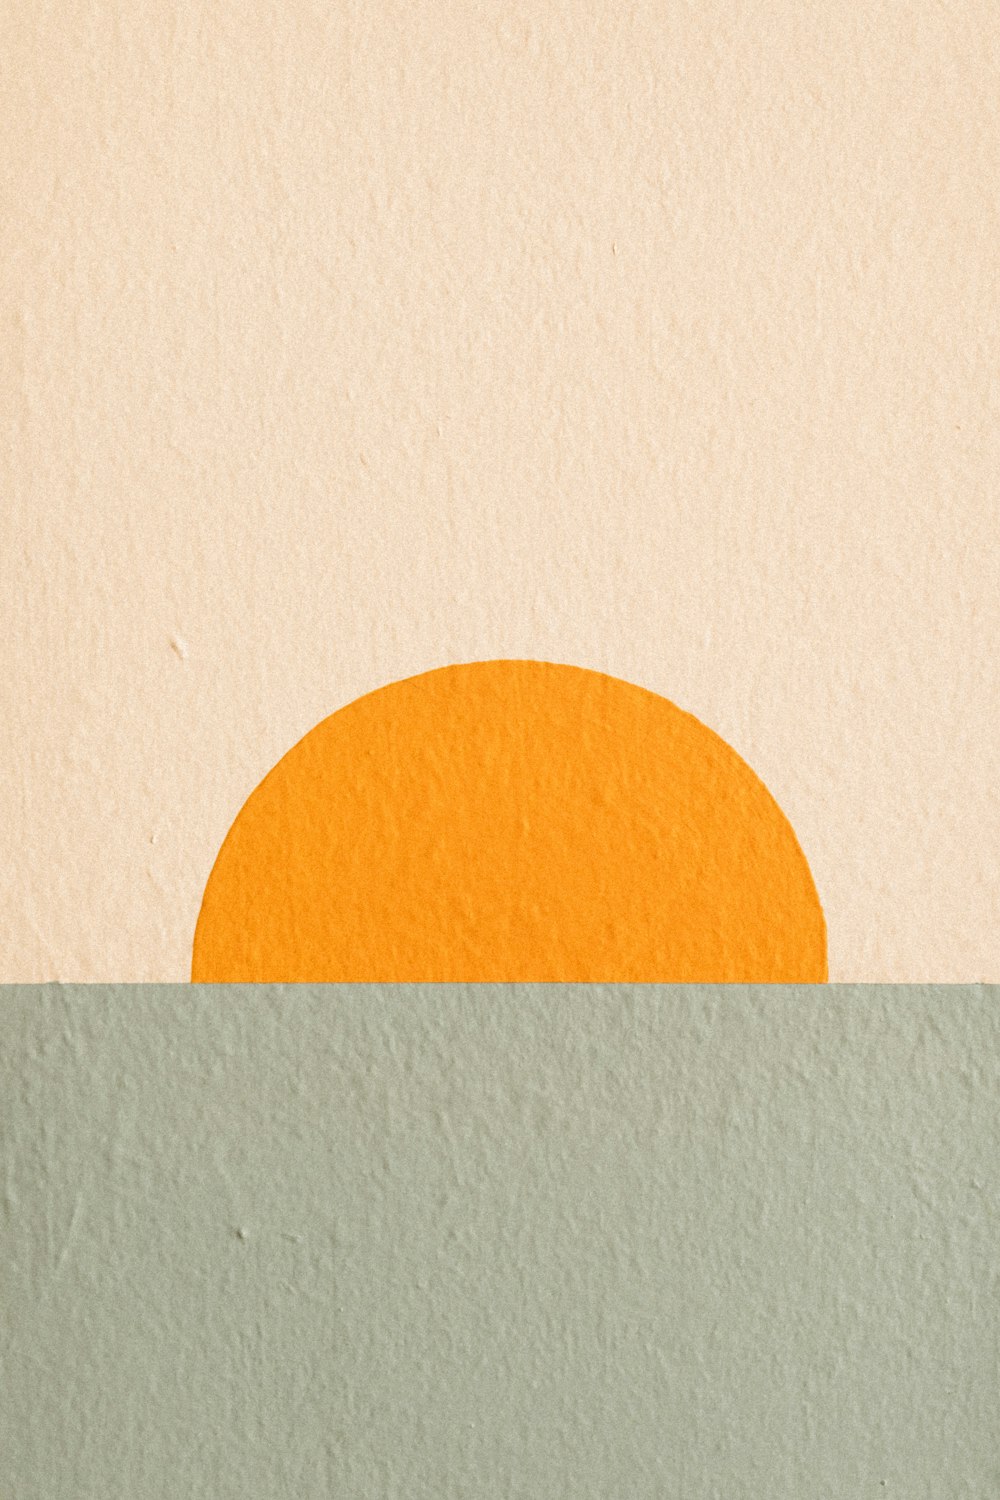 uma pintura de um sol laranja no meio de um corpo de água